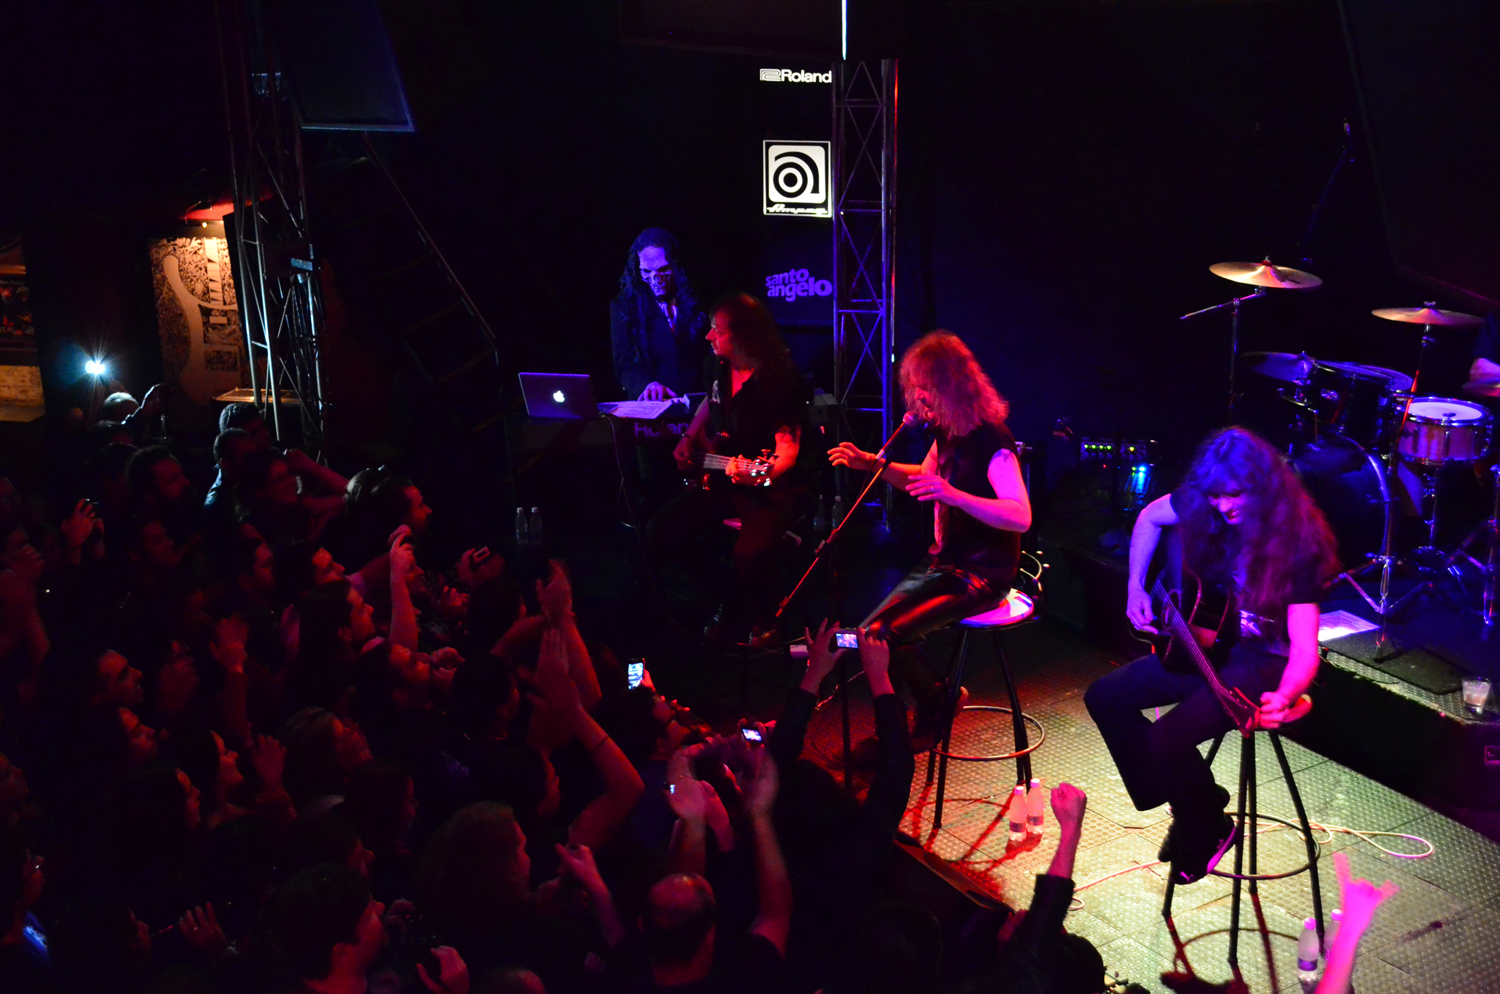 23h às 29h: Bar Manifesto preserva rock há 24 anos com shows nas noites paulistanas